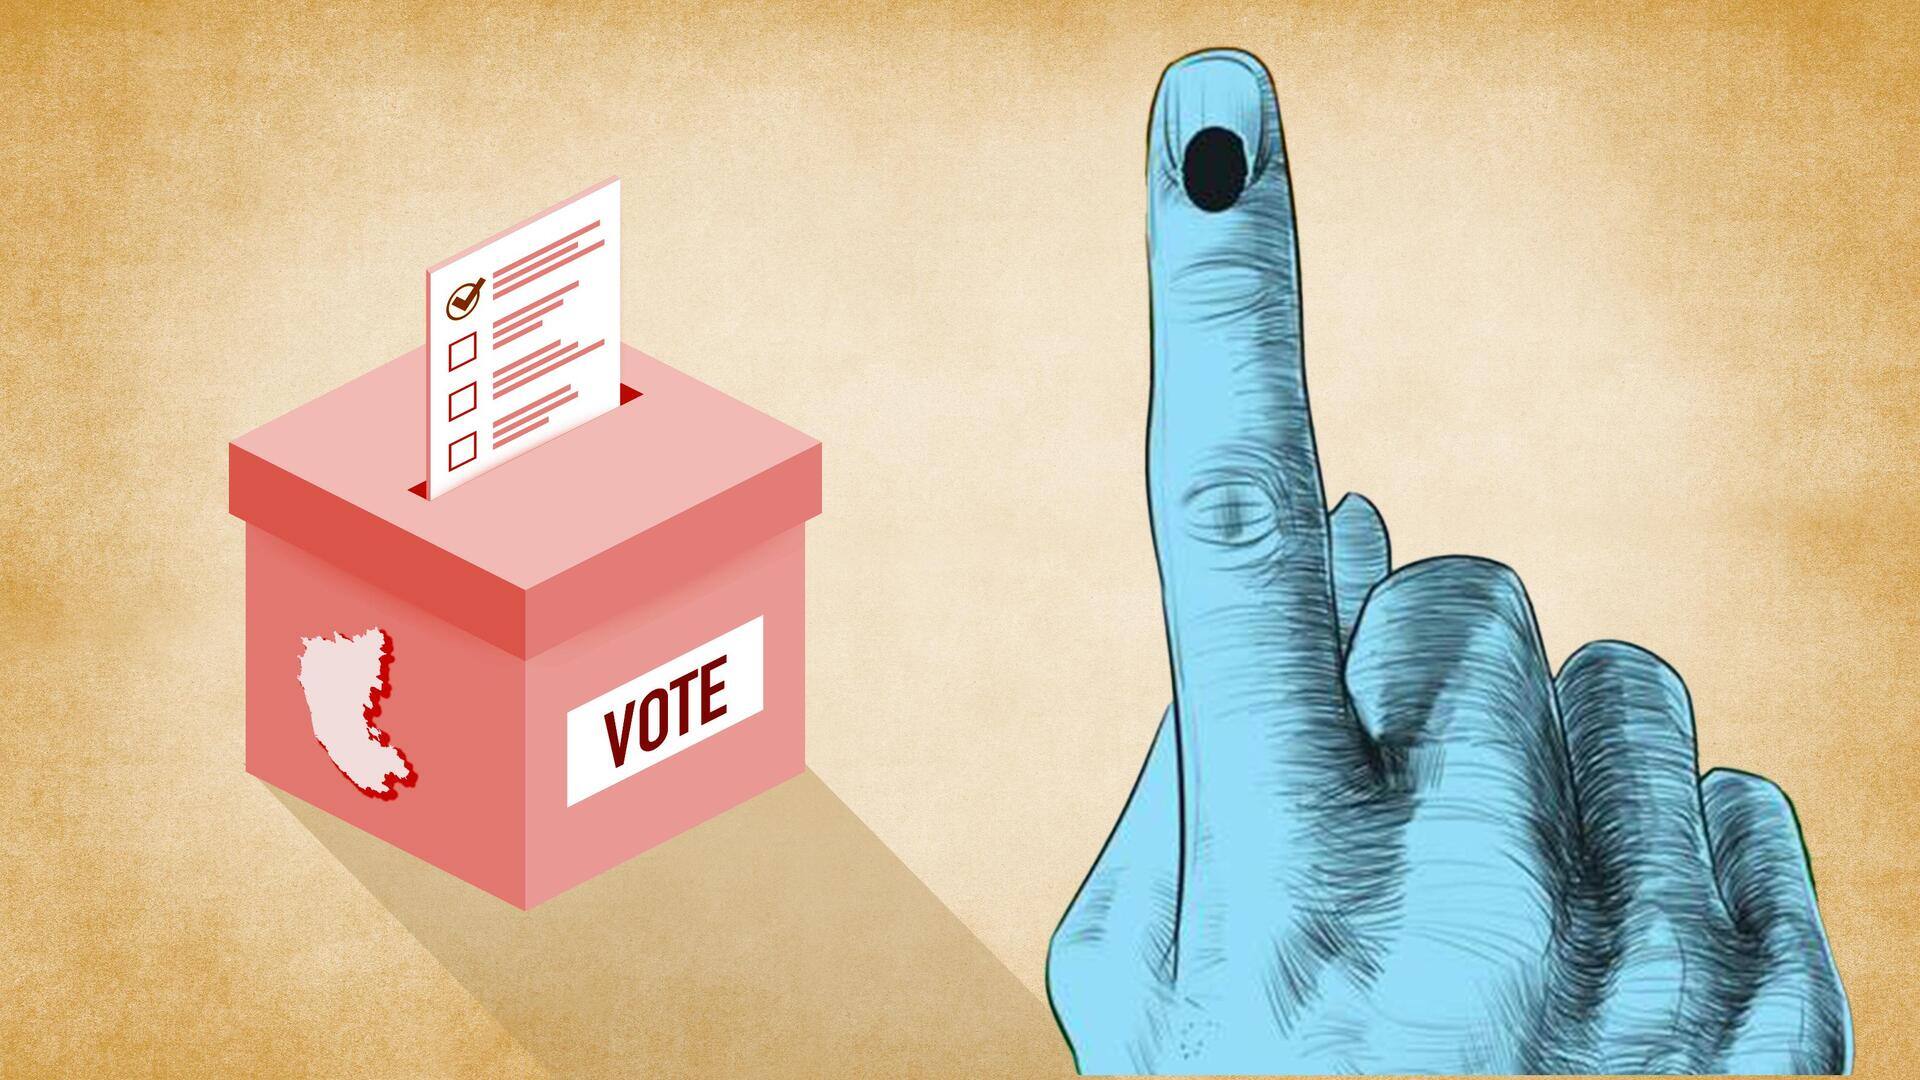 उपचुनाव: 6 राज्यों की 7 विधानसभा सीटों के लिए मतदान जारी, INDIA गठबंधन की पहली परीक्षा 